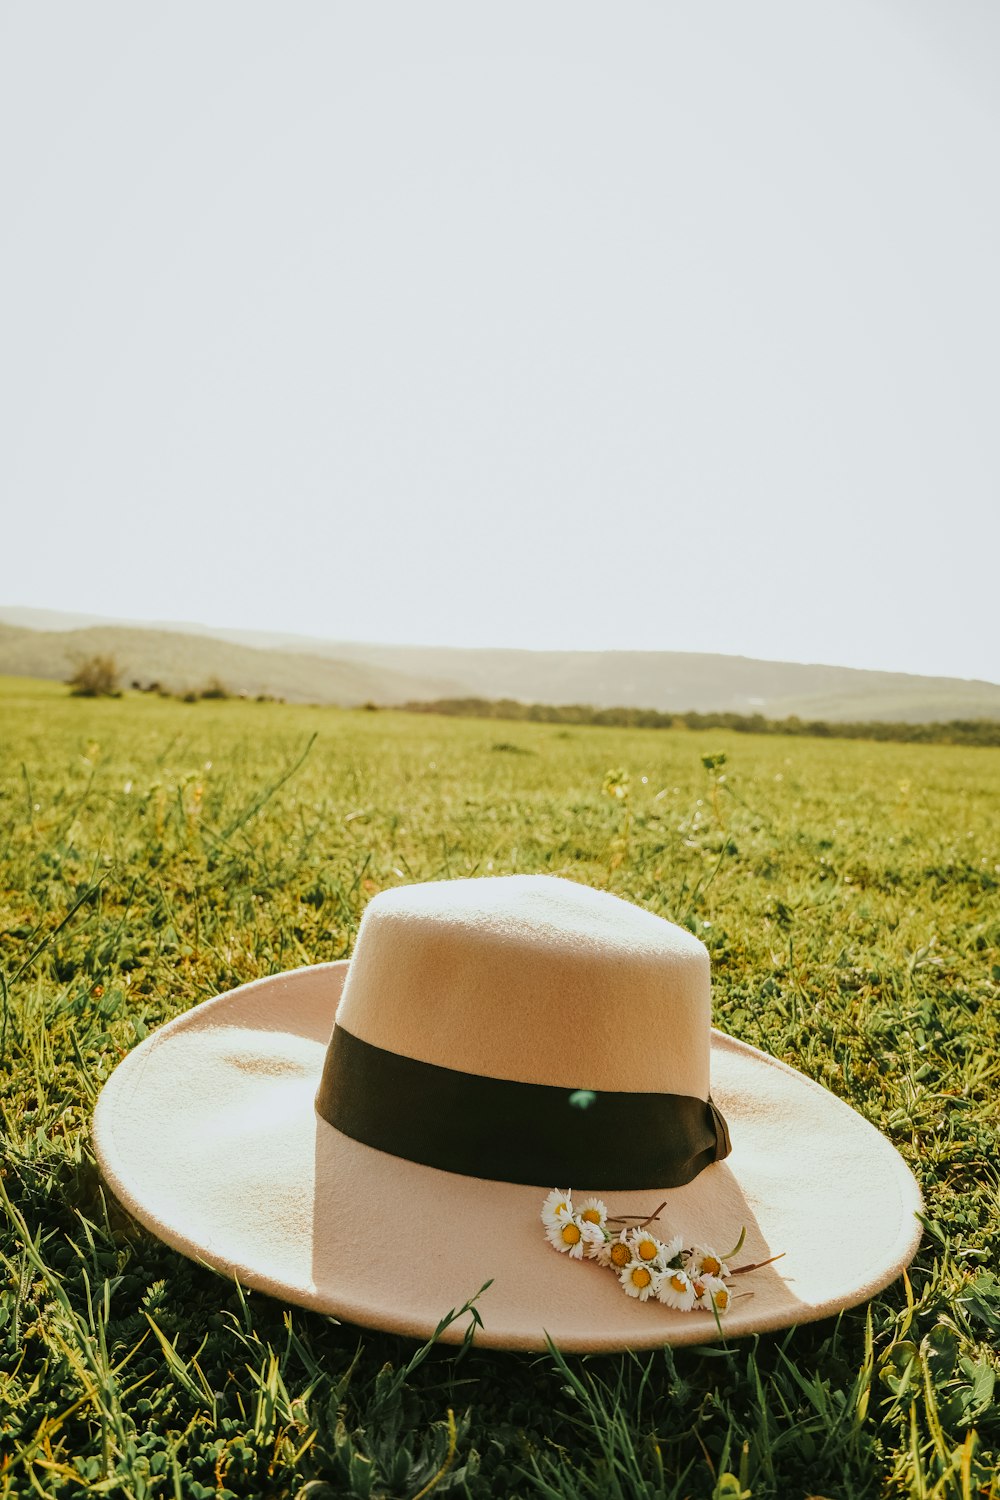 white sun hat on grass field